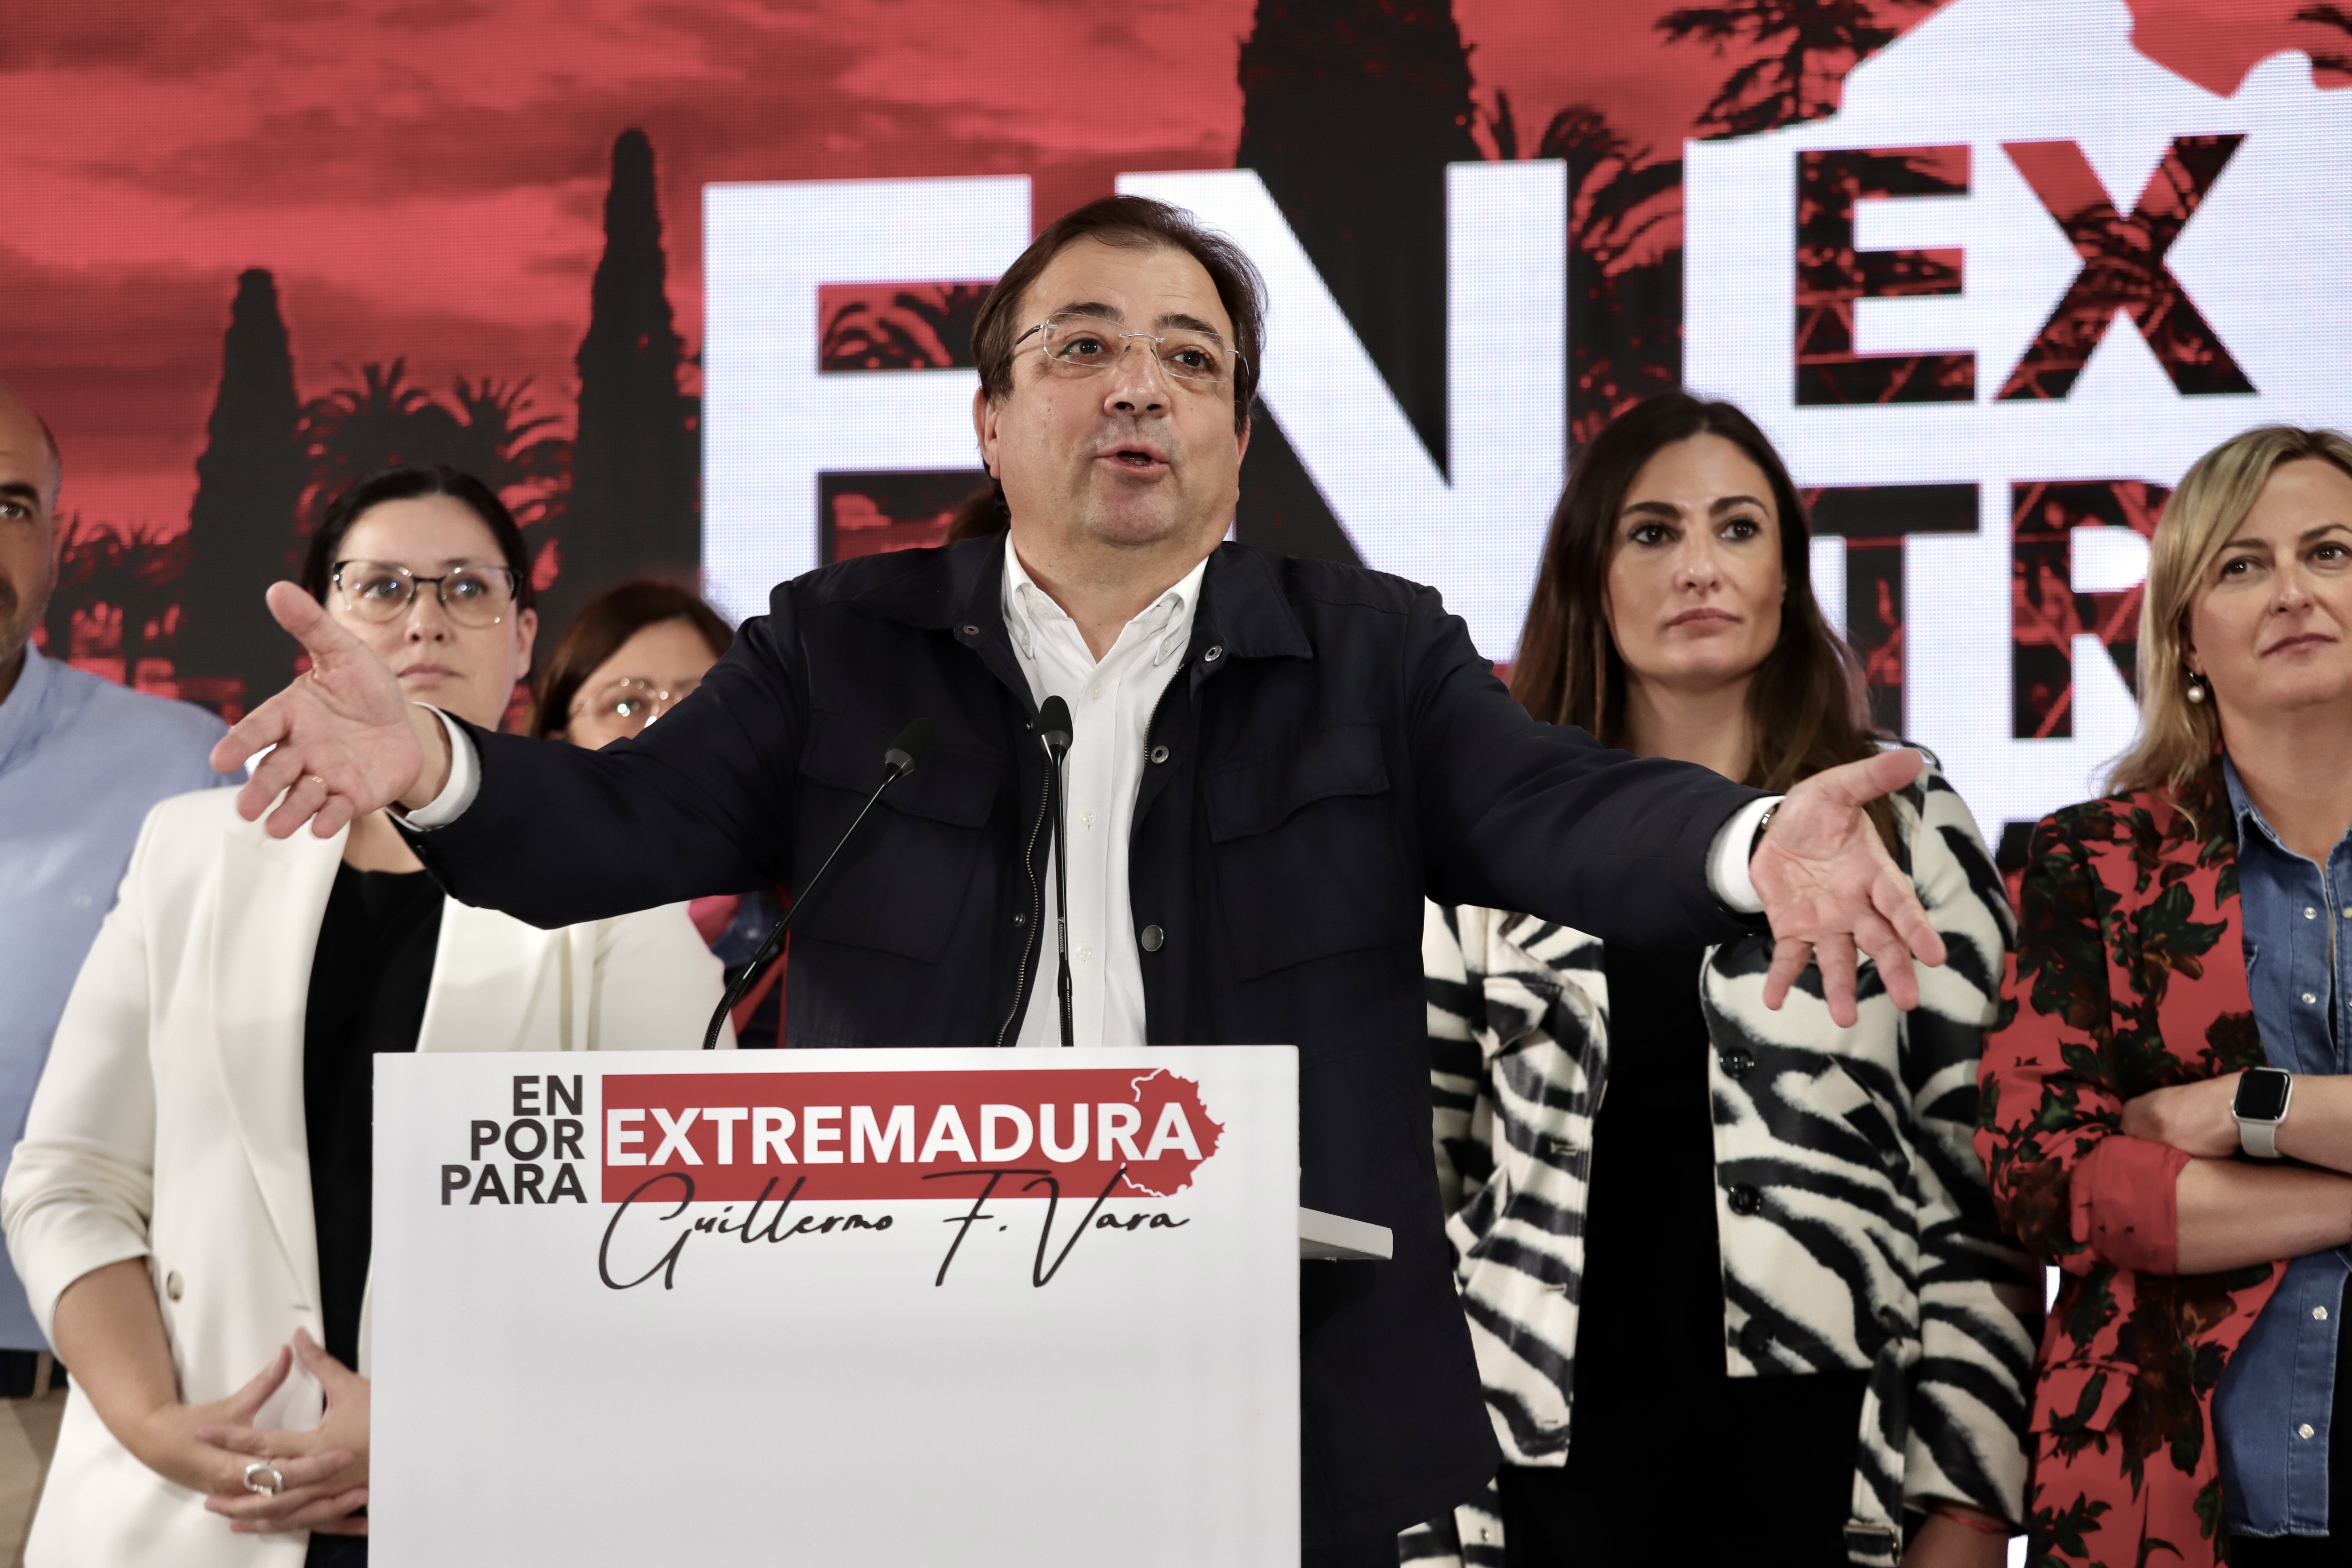 Fernández Vara sopesa volver a su plaza de forense tras dejar la presidencia extremeña